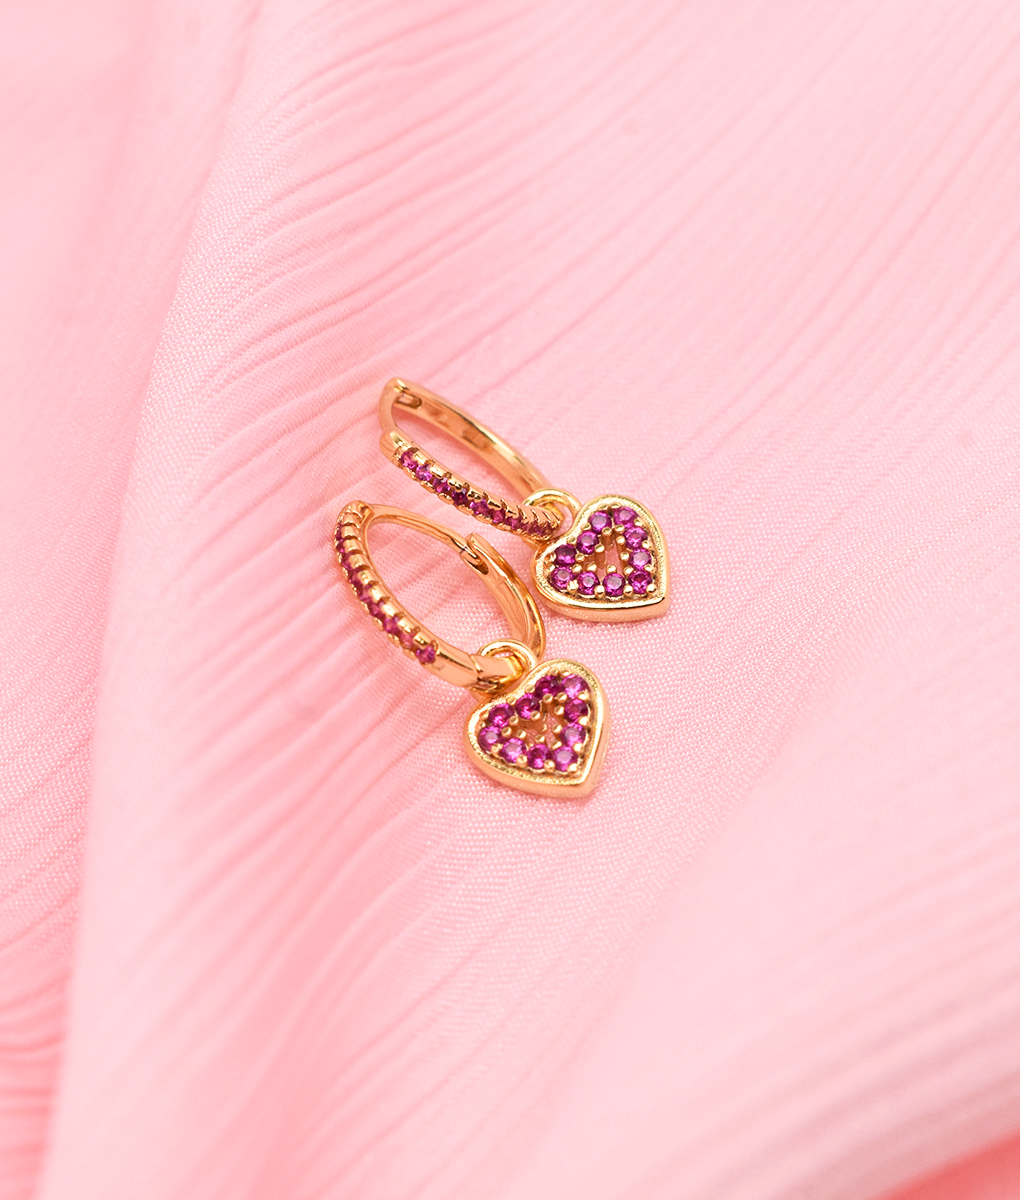 Heart shaped drop earrings